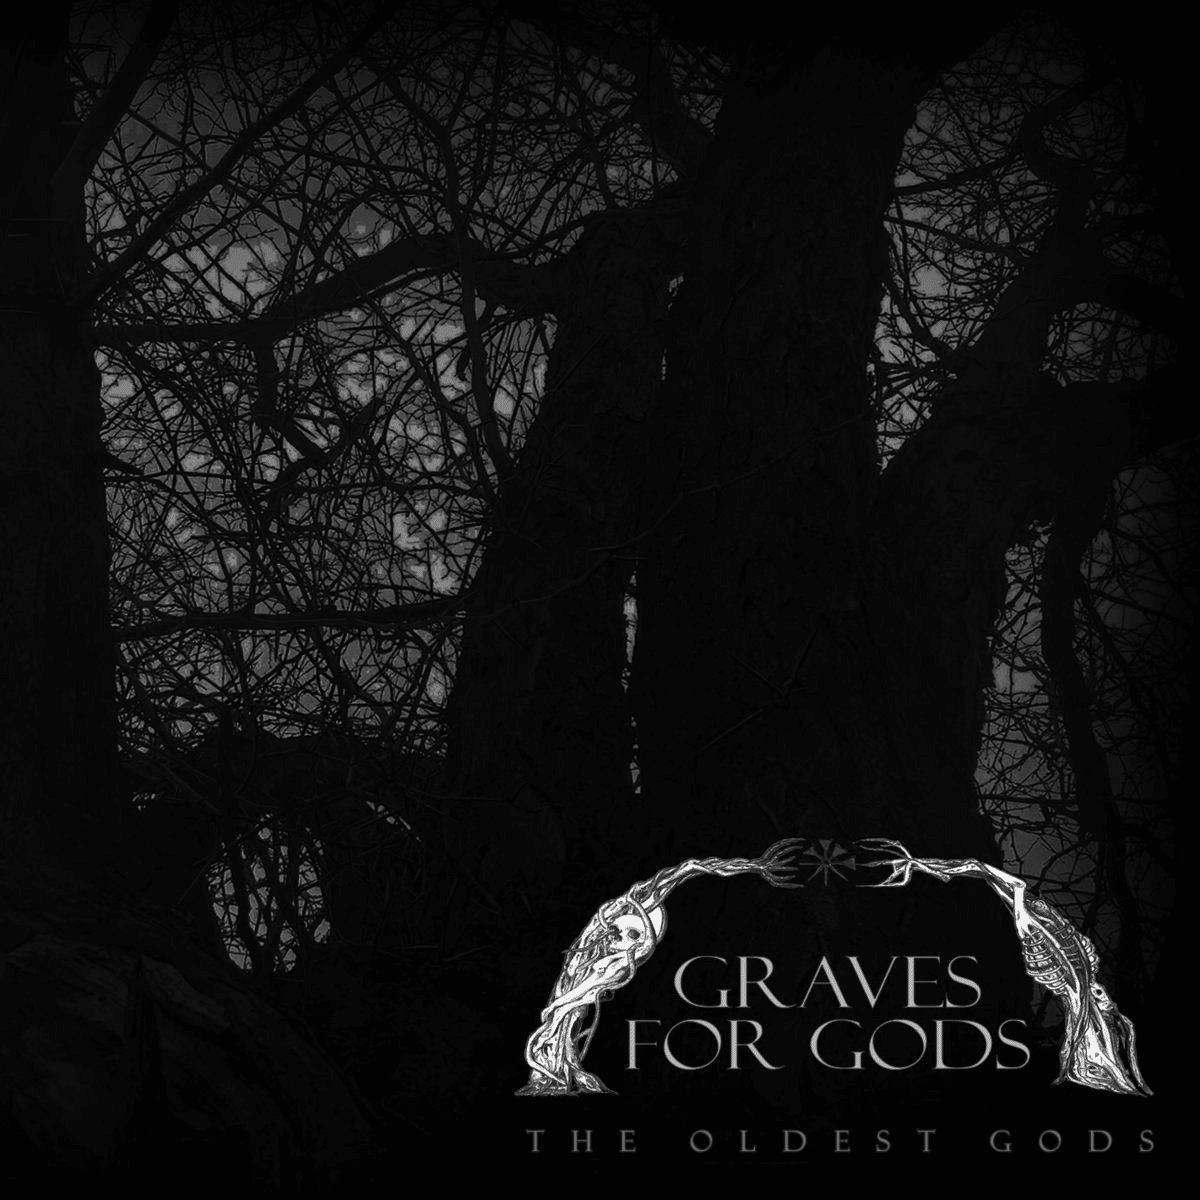 graves-for-gods-the-oldest-gods-album-cover